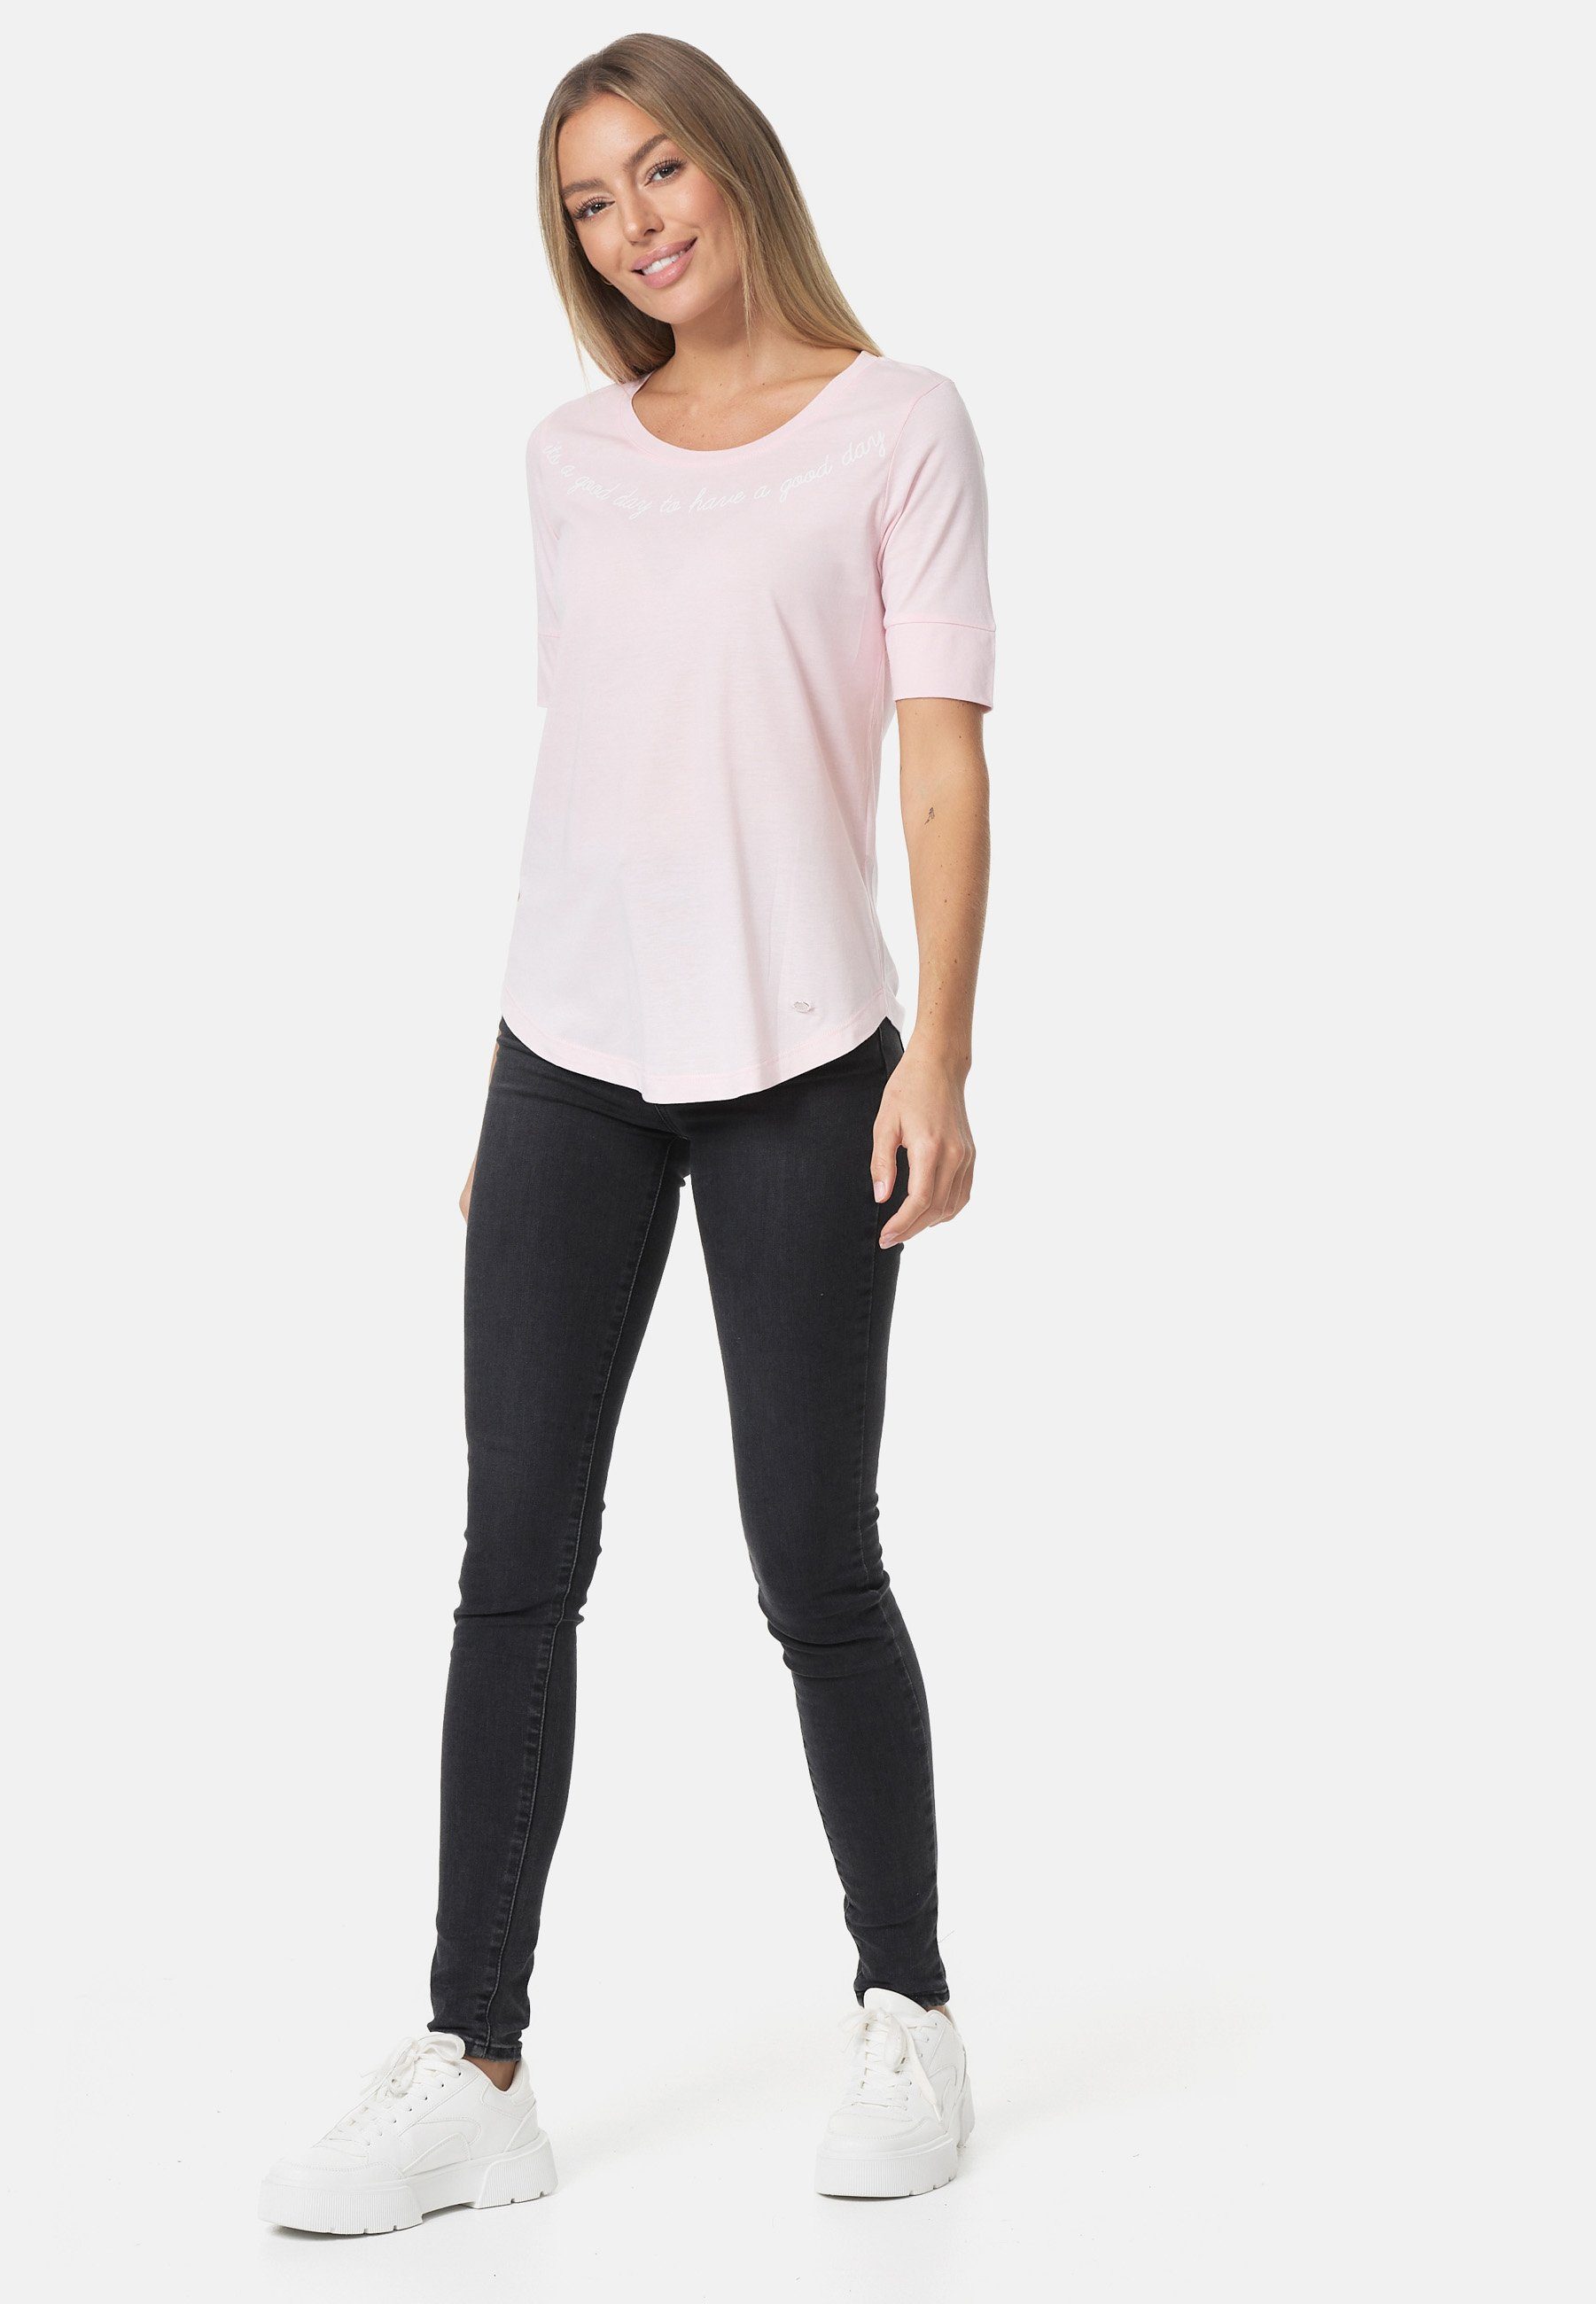 rosa-weiß mit Print stylischem Decay T-Shirt